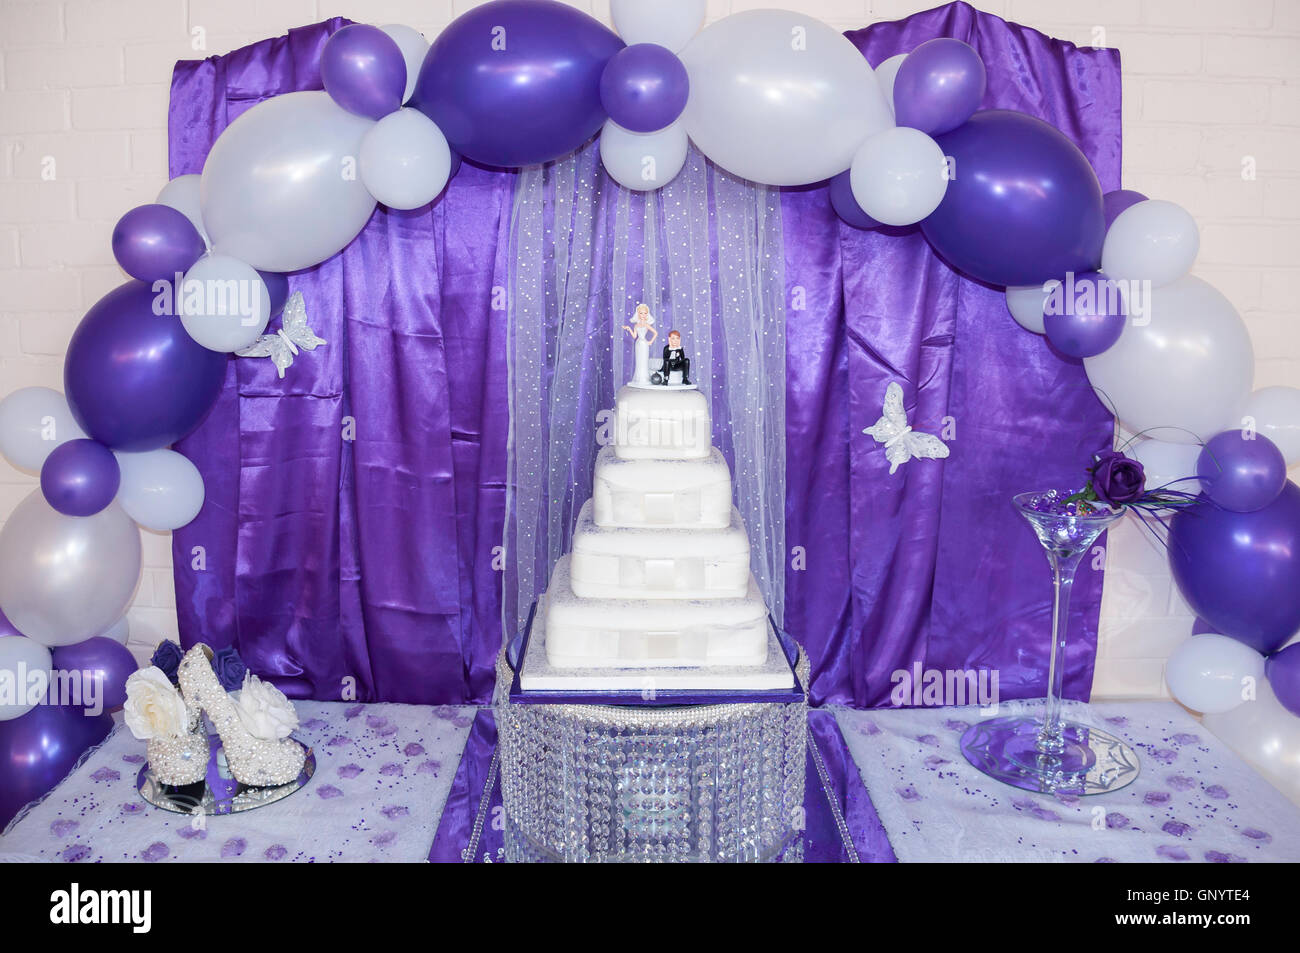 Gâteau de mariage affichage à réception de mariage, Staines-upon-Thames, Surrey, Angleterre, Royaume-Uni Banque D'Images